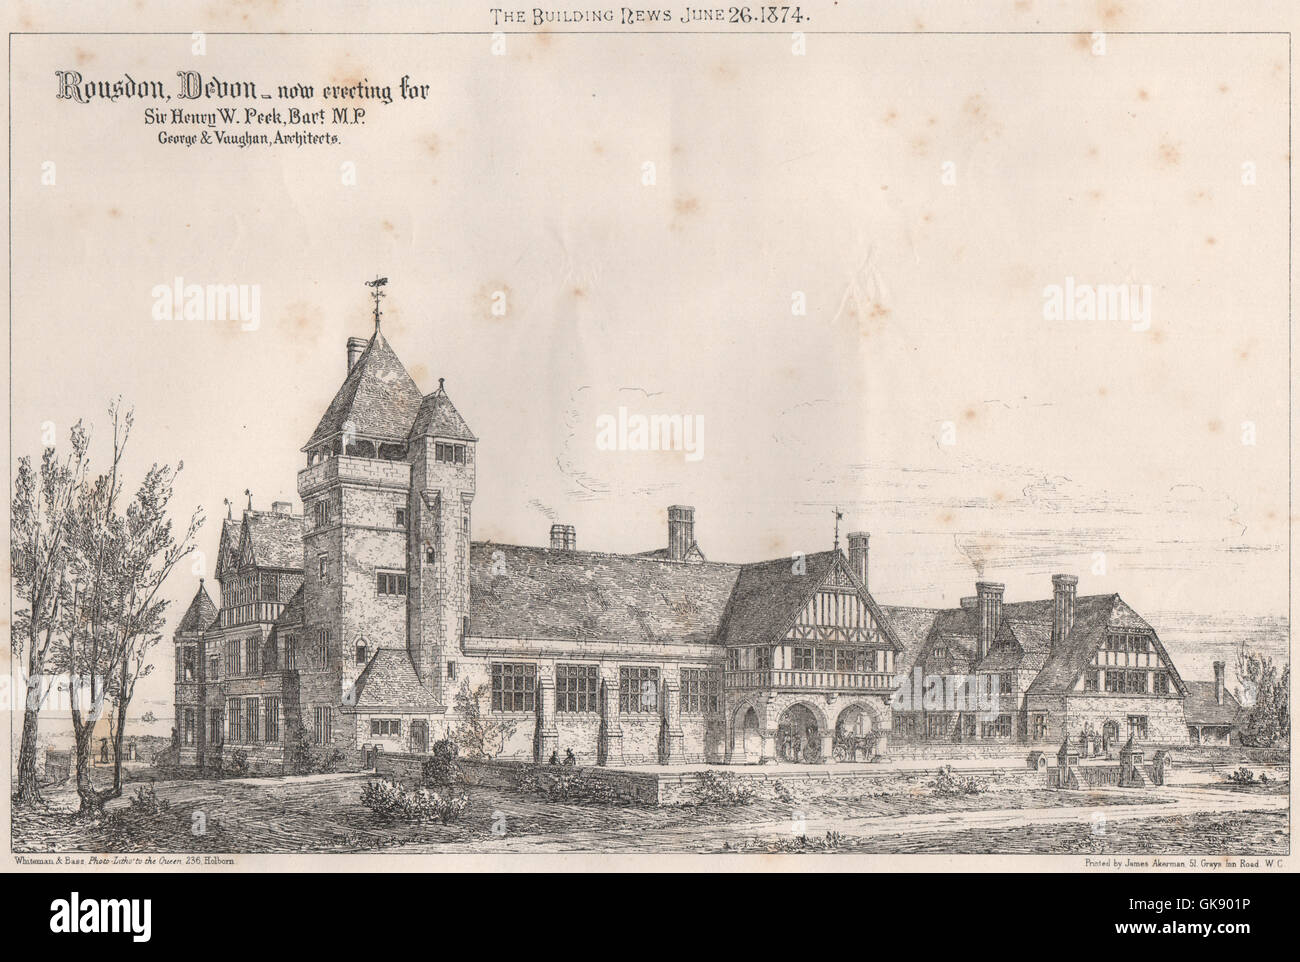 Rousdon, Devon - für Sir Henry W. Peek, MP; George & Vaughan Architekten, 1874 Stockfoto